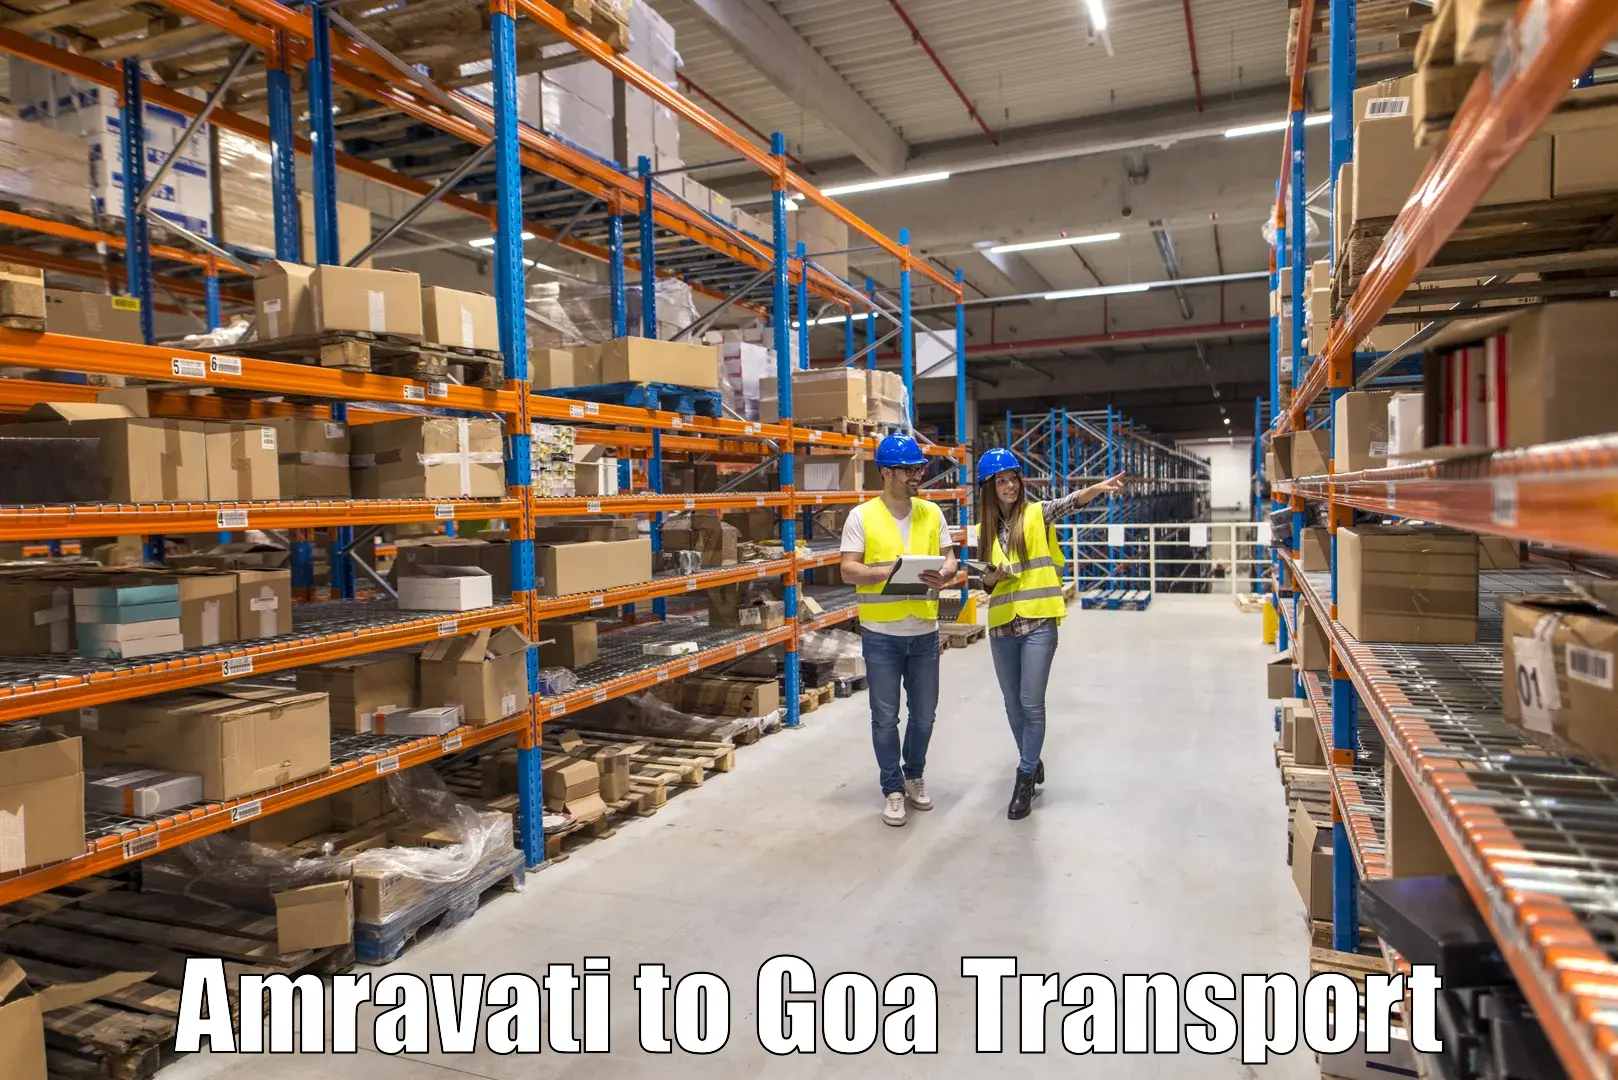 Cargo transport services Amravati to Bardez